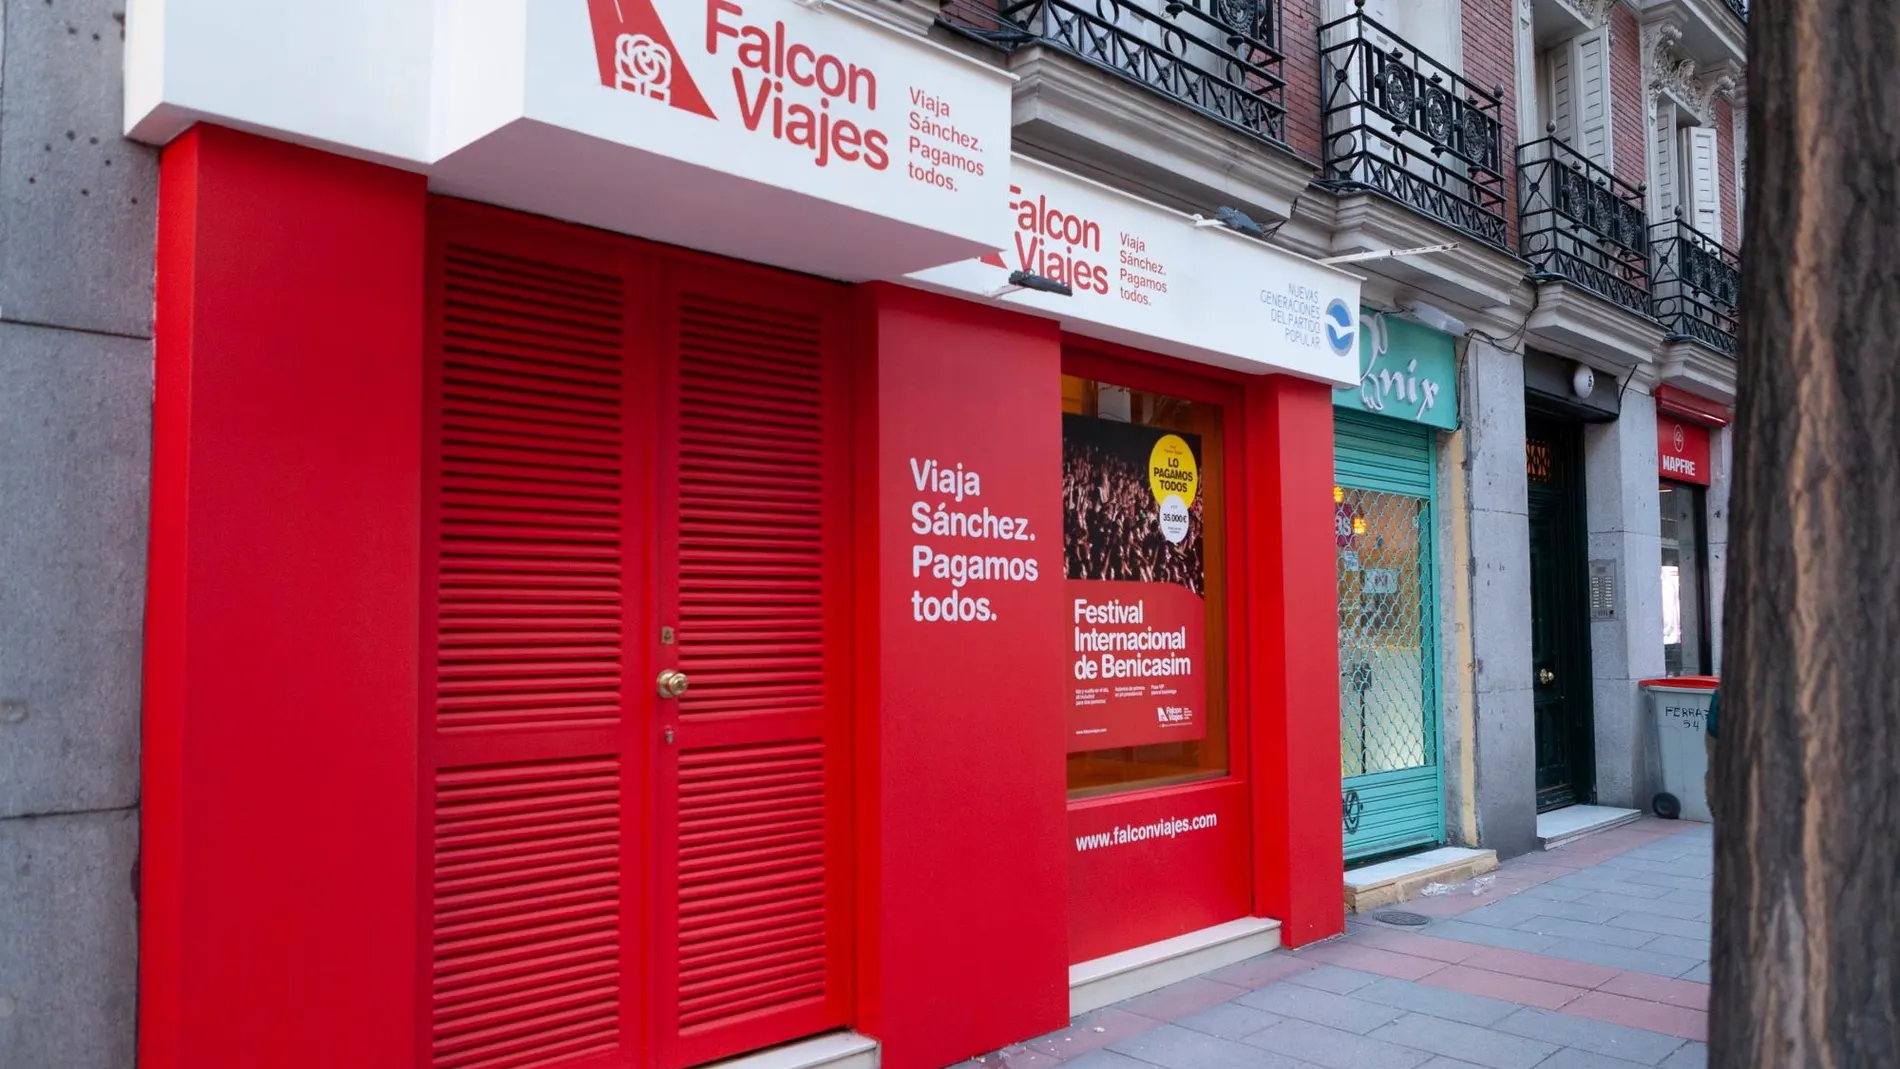 ‘Falcon Viajes’ está ubicada al lado de la sede del PSOE